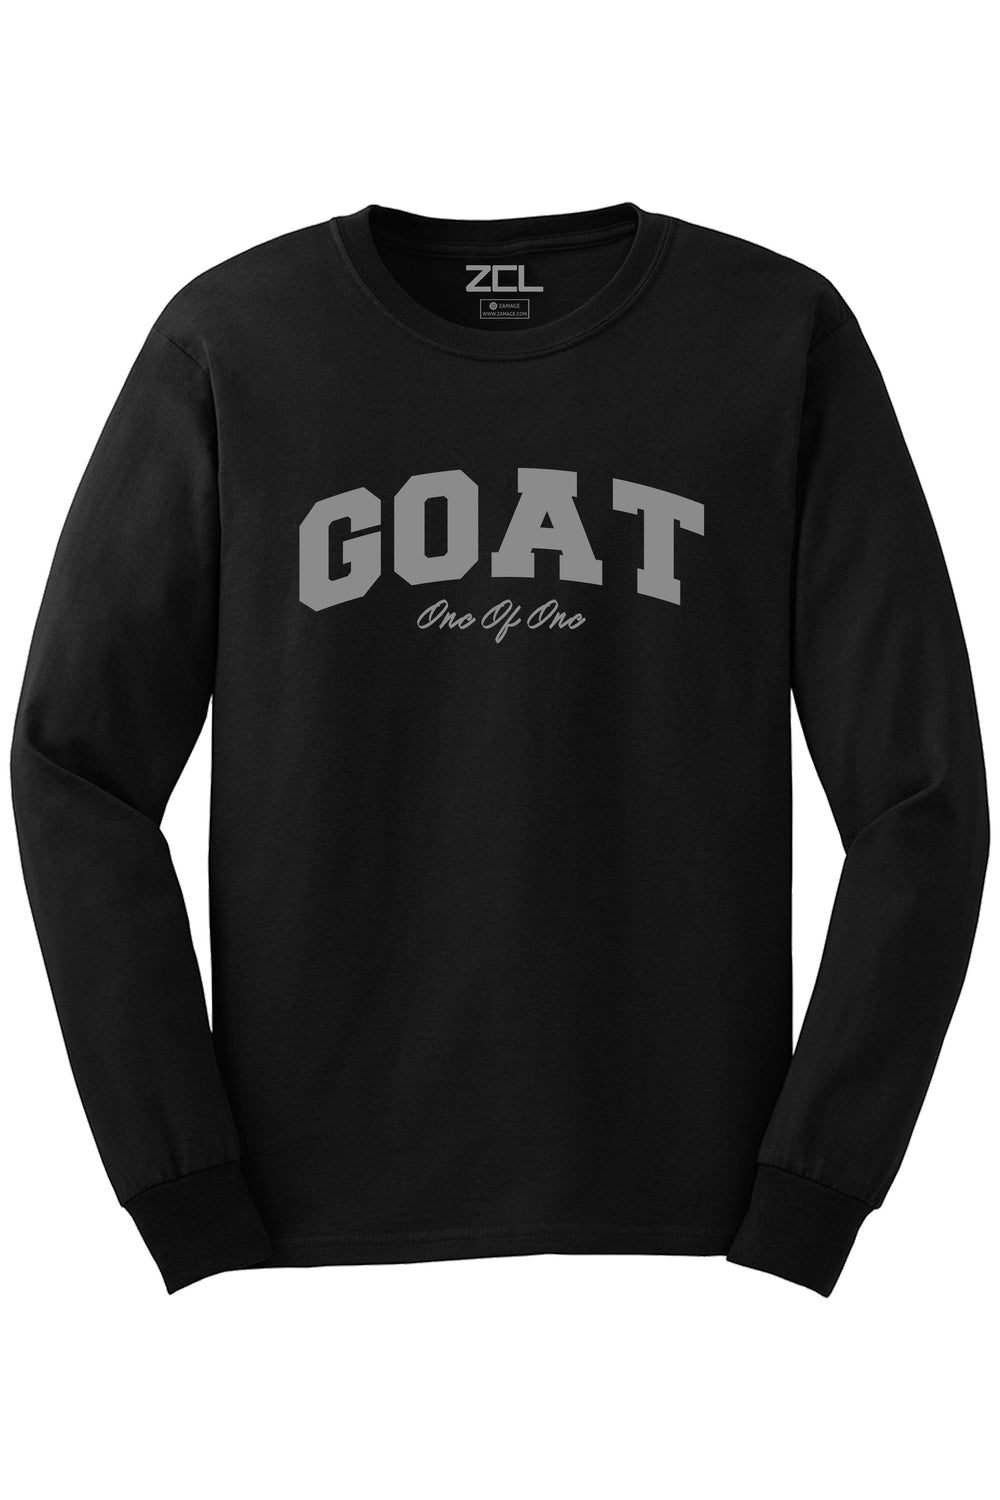 Goat Long Sleeve Tee (Grey Logo) - Zamage